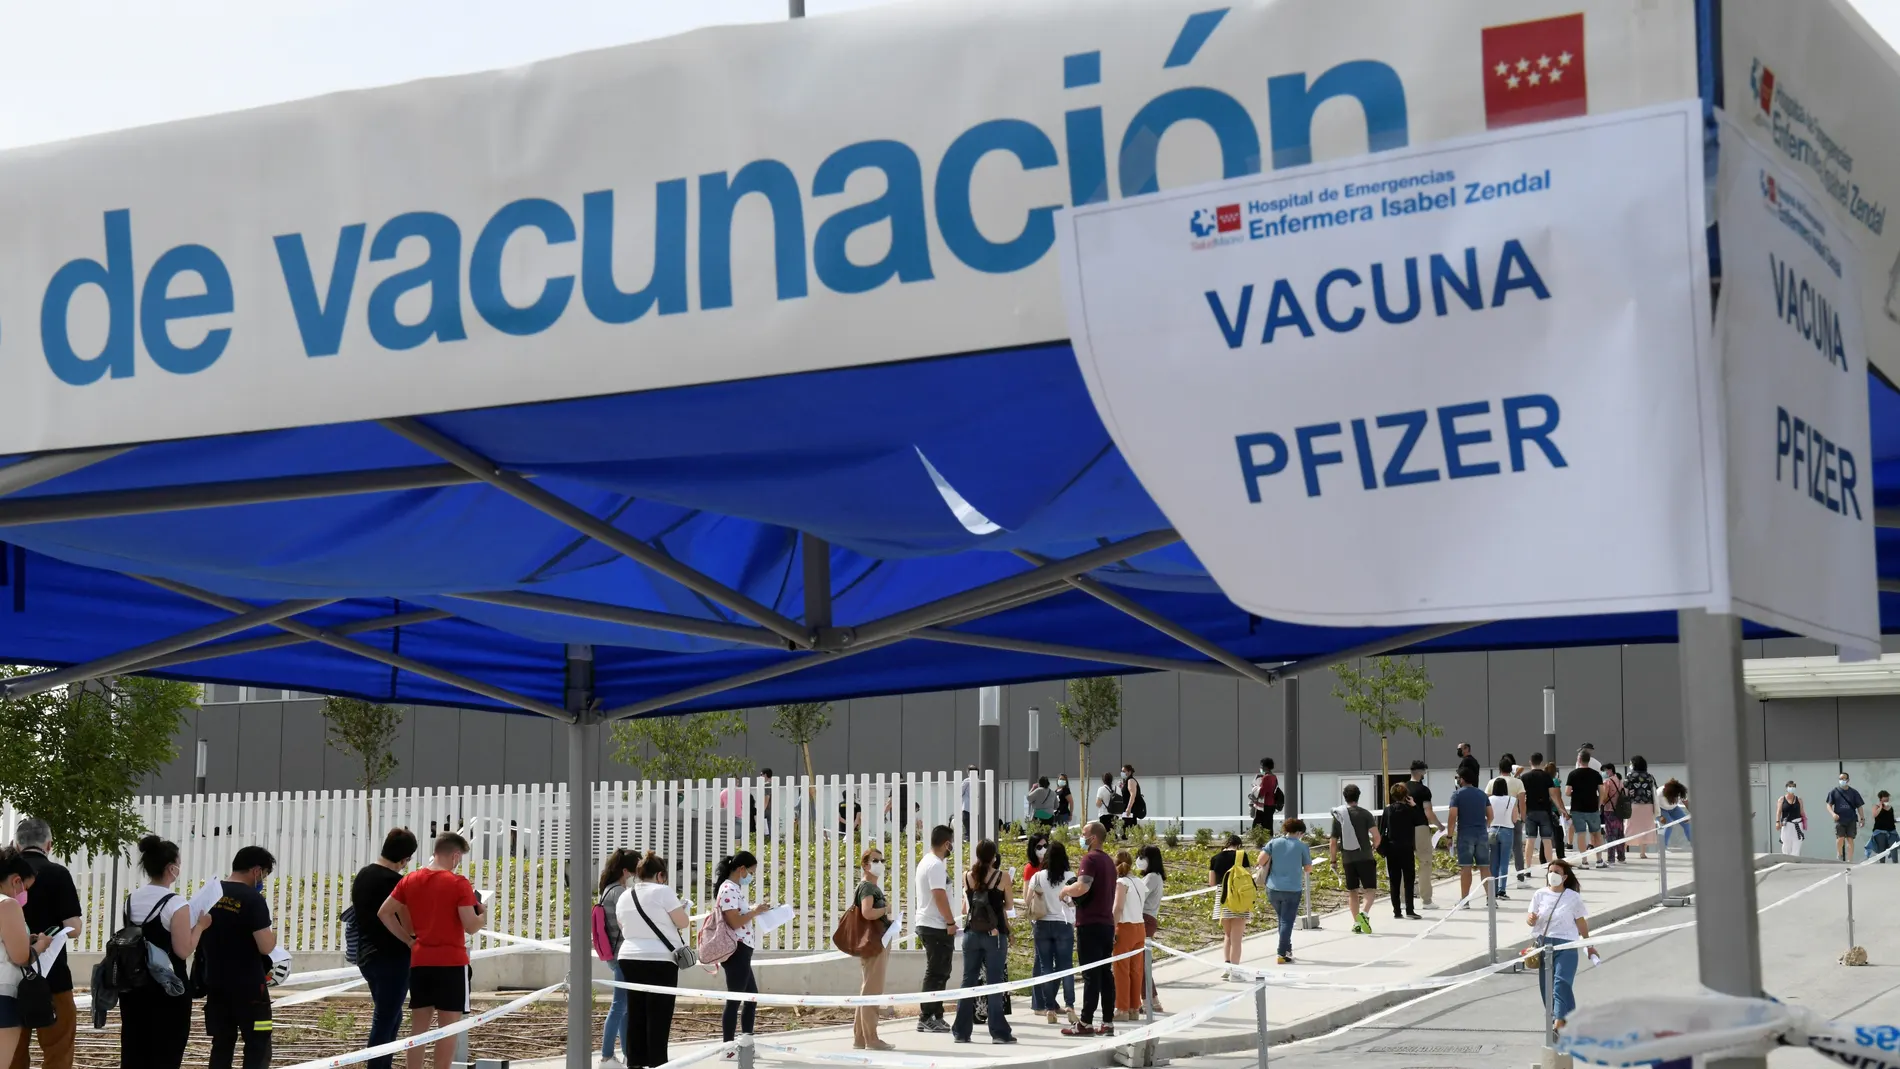 La mayoría de la población española se decantó por completar su pauta de vacunación con AstraZeneca, tras el problema surgido con los trombos en personas menores de 60 años, en lugar de inocularse una segunda dosis de Pfizer, como también se ofrecía